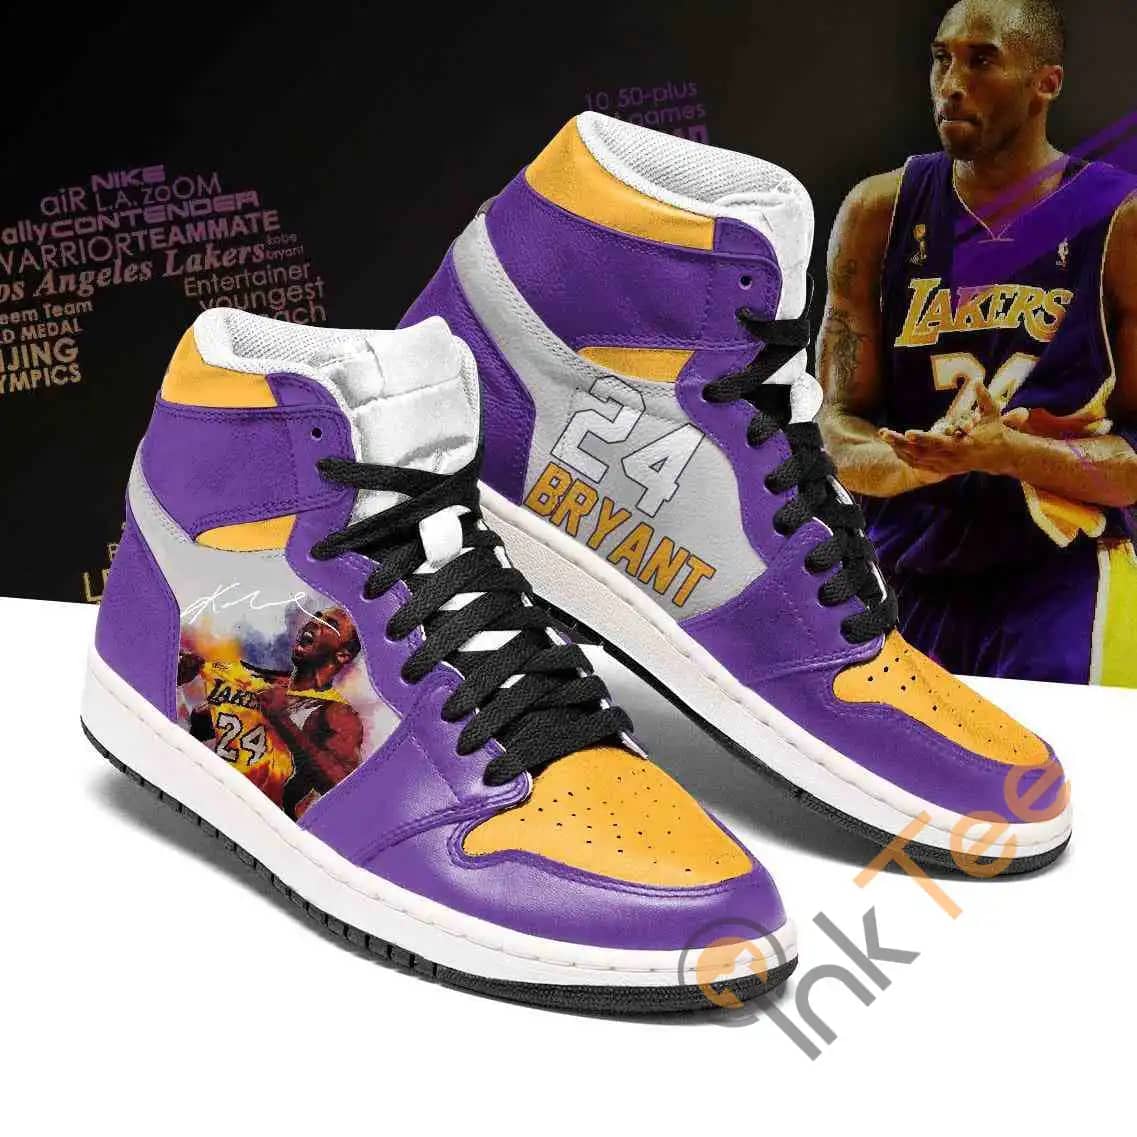 Los Angeles Lakers Custom Air Jordan 11 Sneakers - Inktee Store